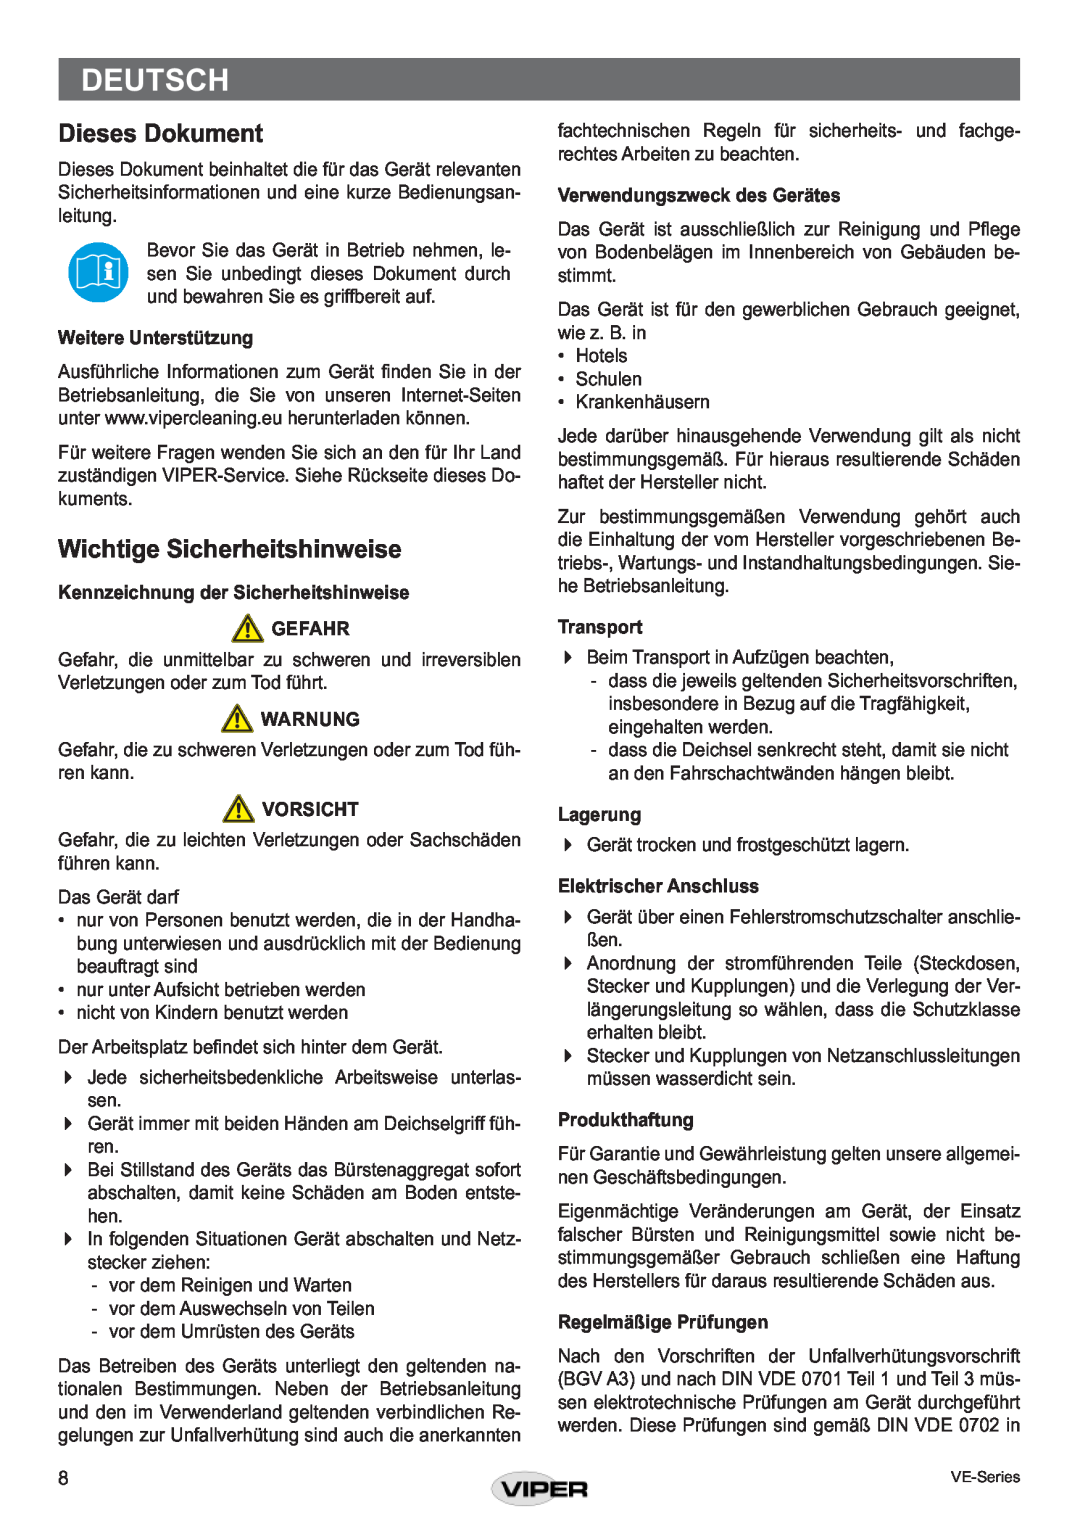 Viper VE 15 P Deutsch, Dieses Dokument, Wichtige Sicherheitshinweise, Weitere Unterstützung, Warnung, Vorsicht, Lagerung 